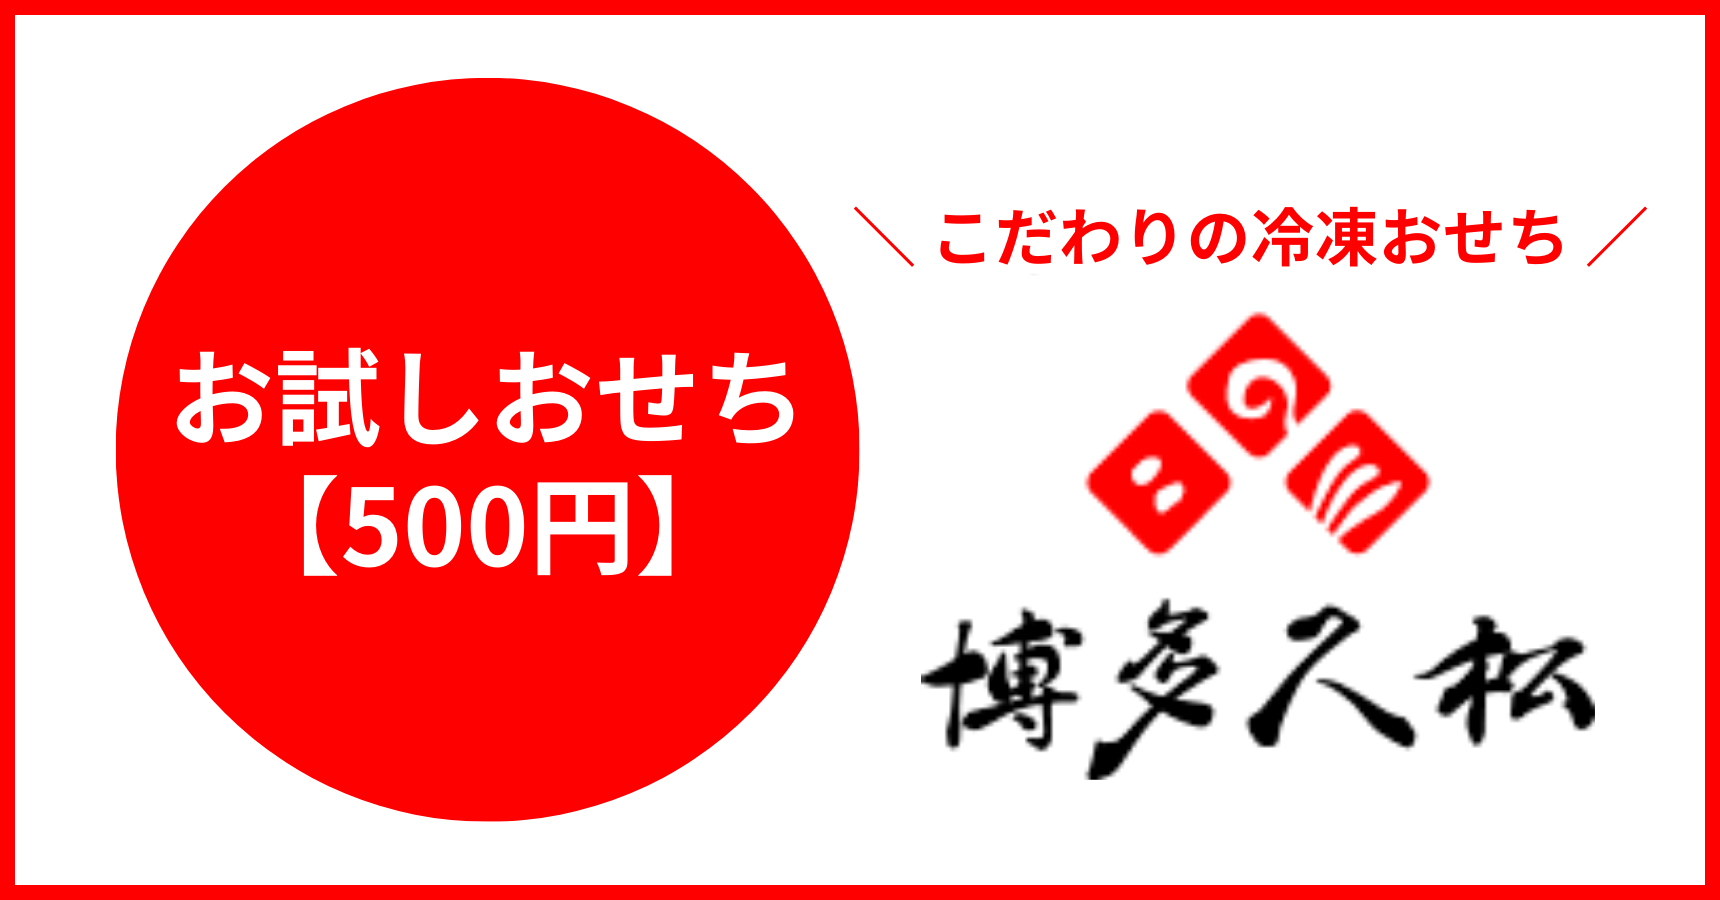 失敗しないおせち通販メーカー「博多久松」は初めてのおせちの人でも安心できる「お試しおせち」を500円から注文できる。